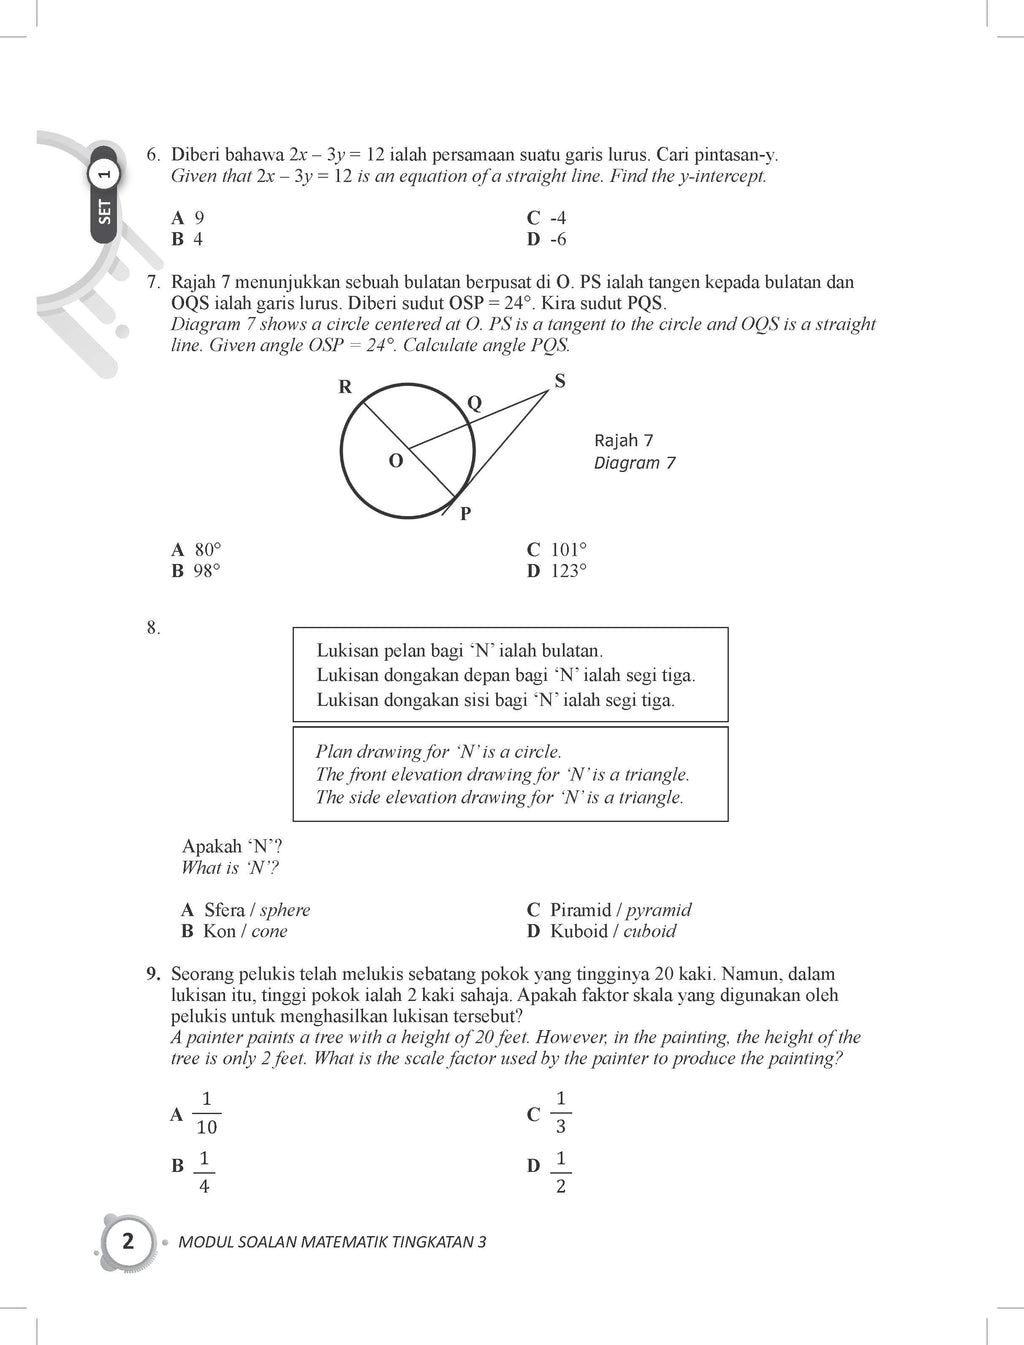 Get Smart Modul Soalan Matematik Tingkatan 3 Tbbs1168 Telaga Biru Sdn Bhd